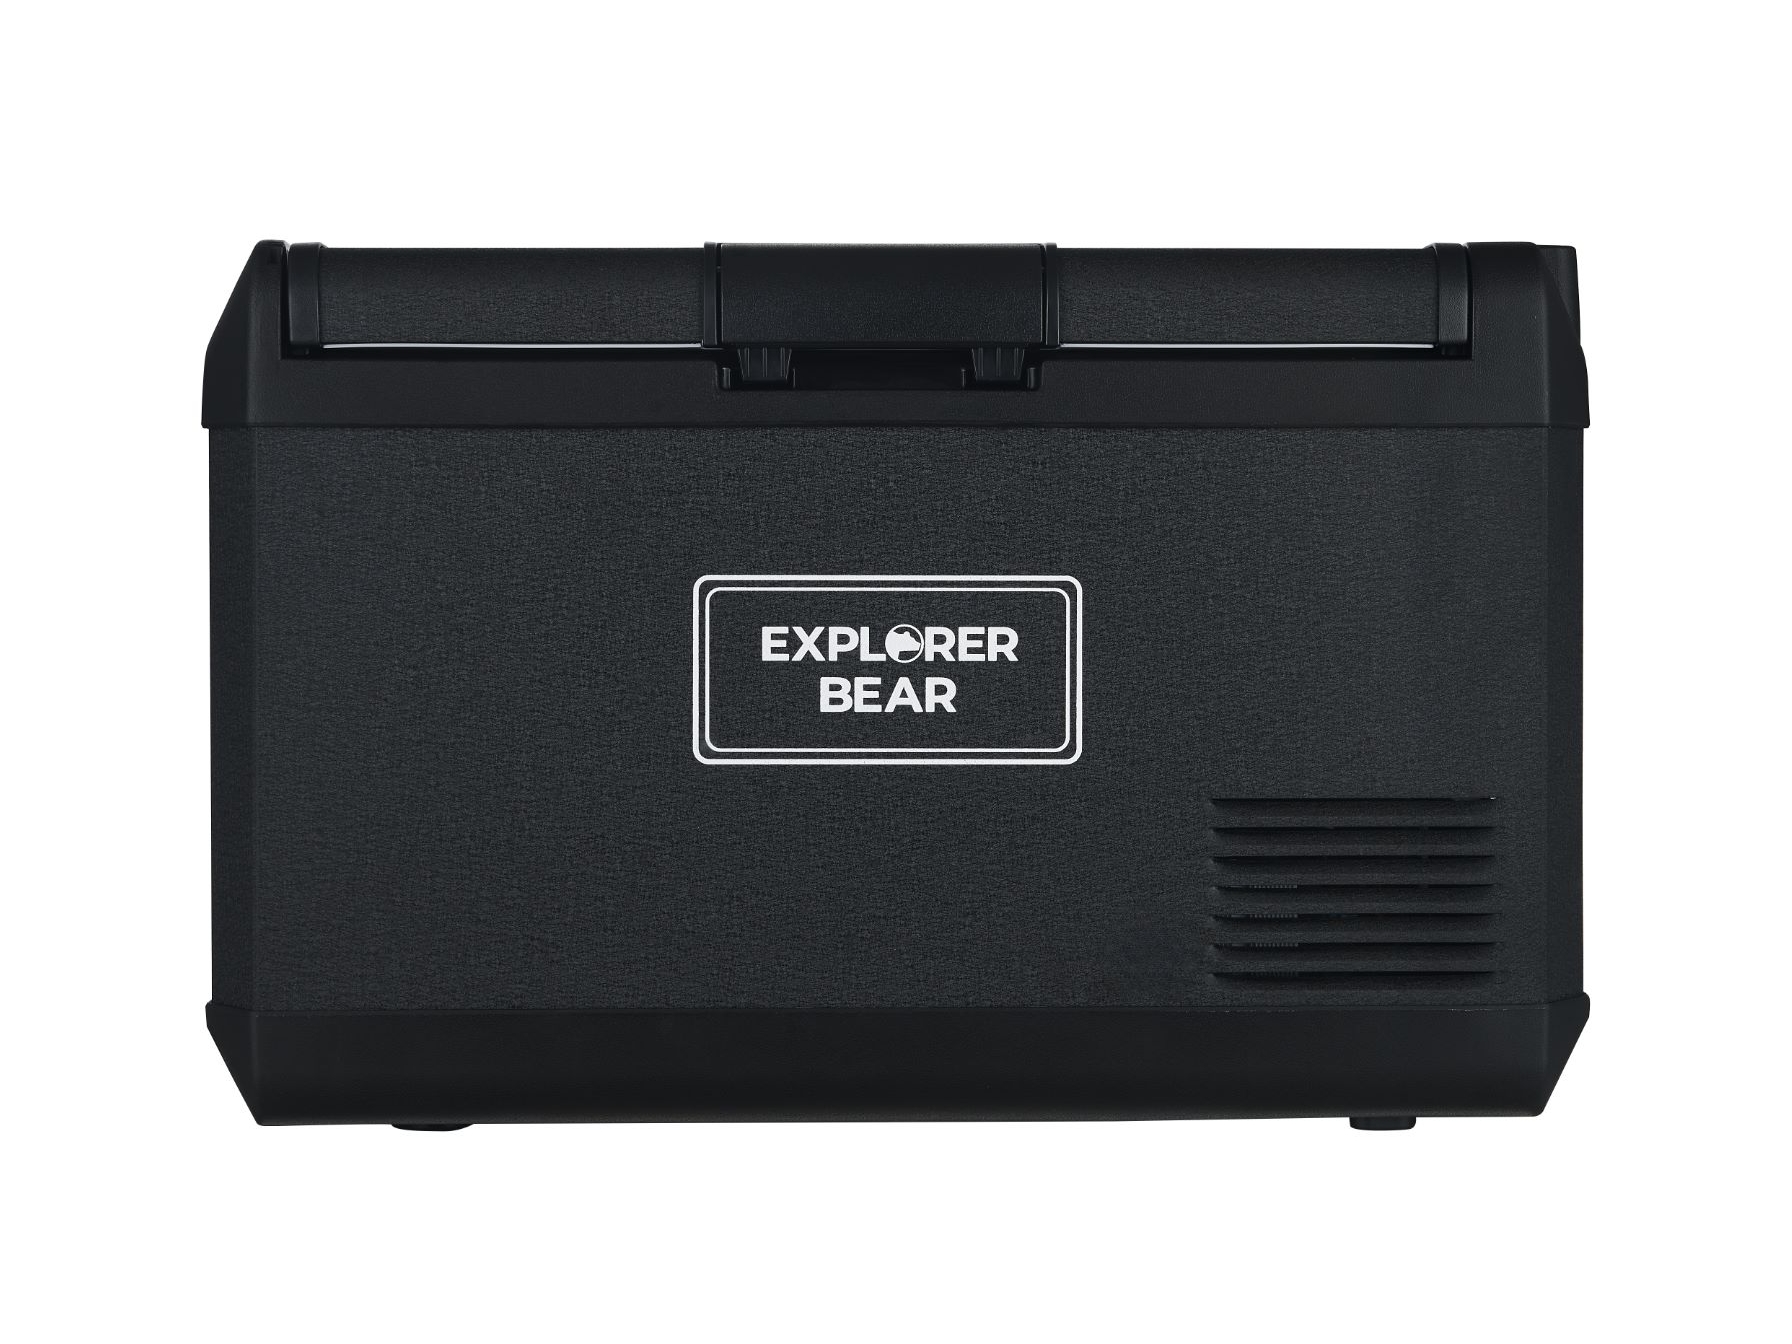 Explorer Bear EX40B 42QT/40L 12/24V Portable Electric Fridge Freezer - LG, Black